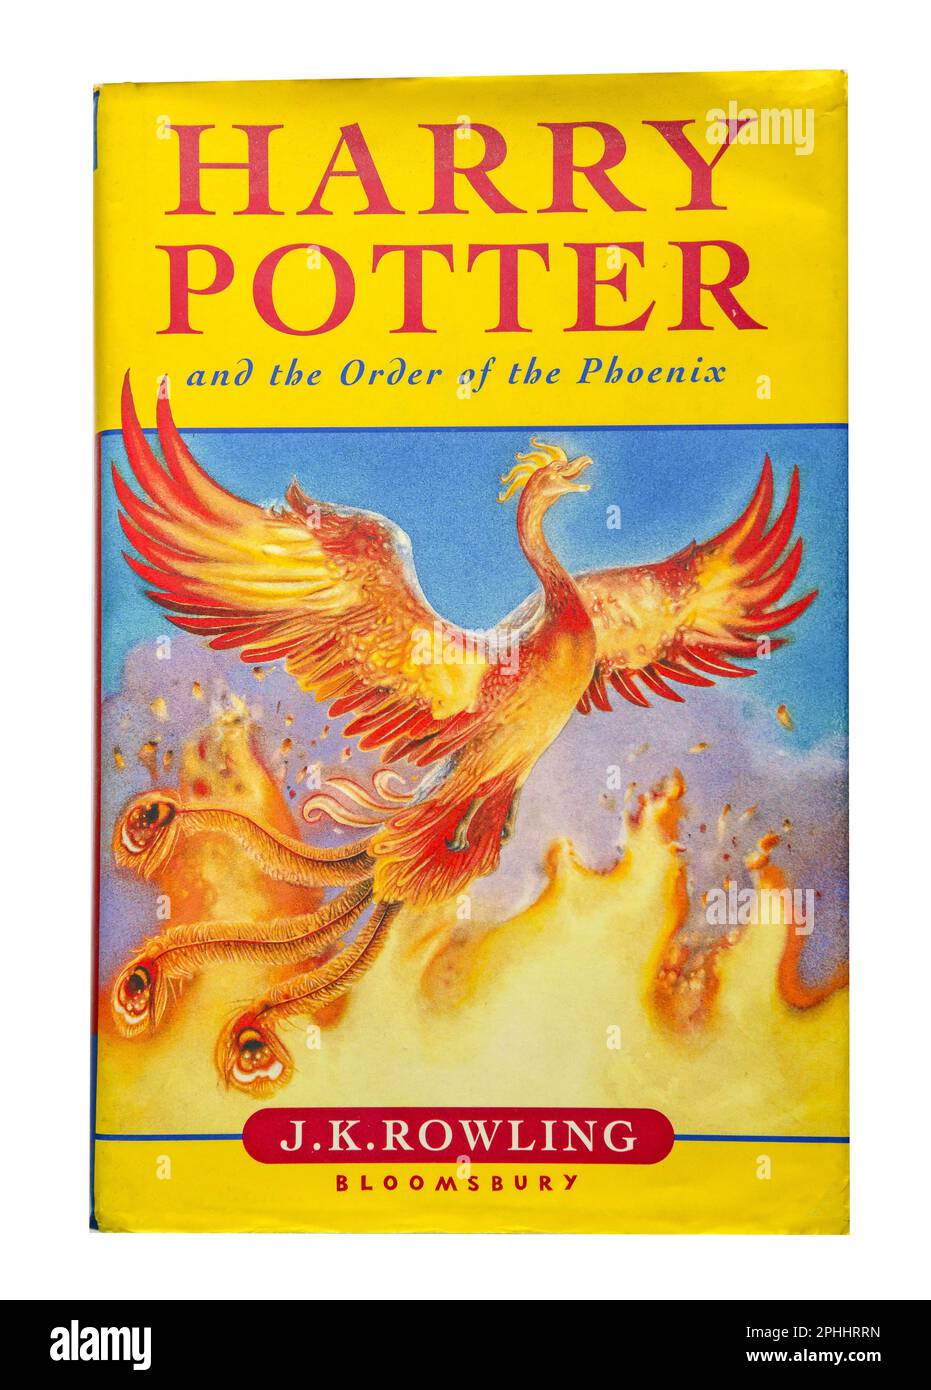 Harry Potter et l'Ordre du Phénix livre de J.K.Rowling, Surrey, Angleterre, Royaume-Uni Banque D'Images